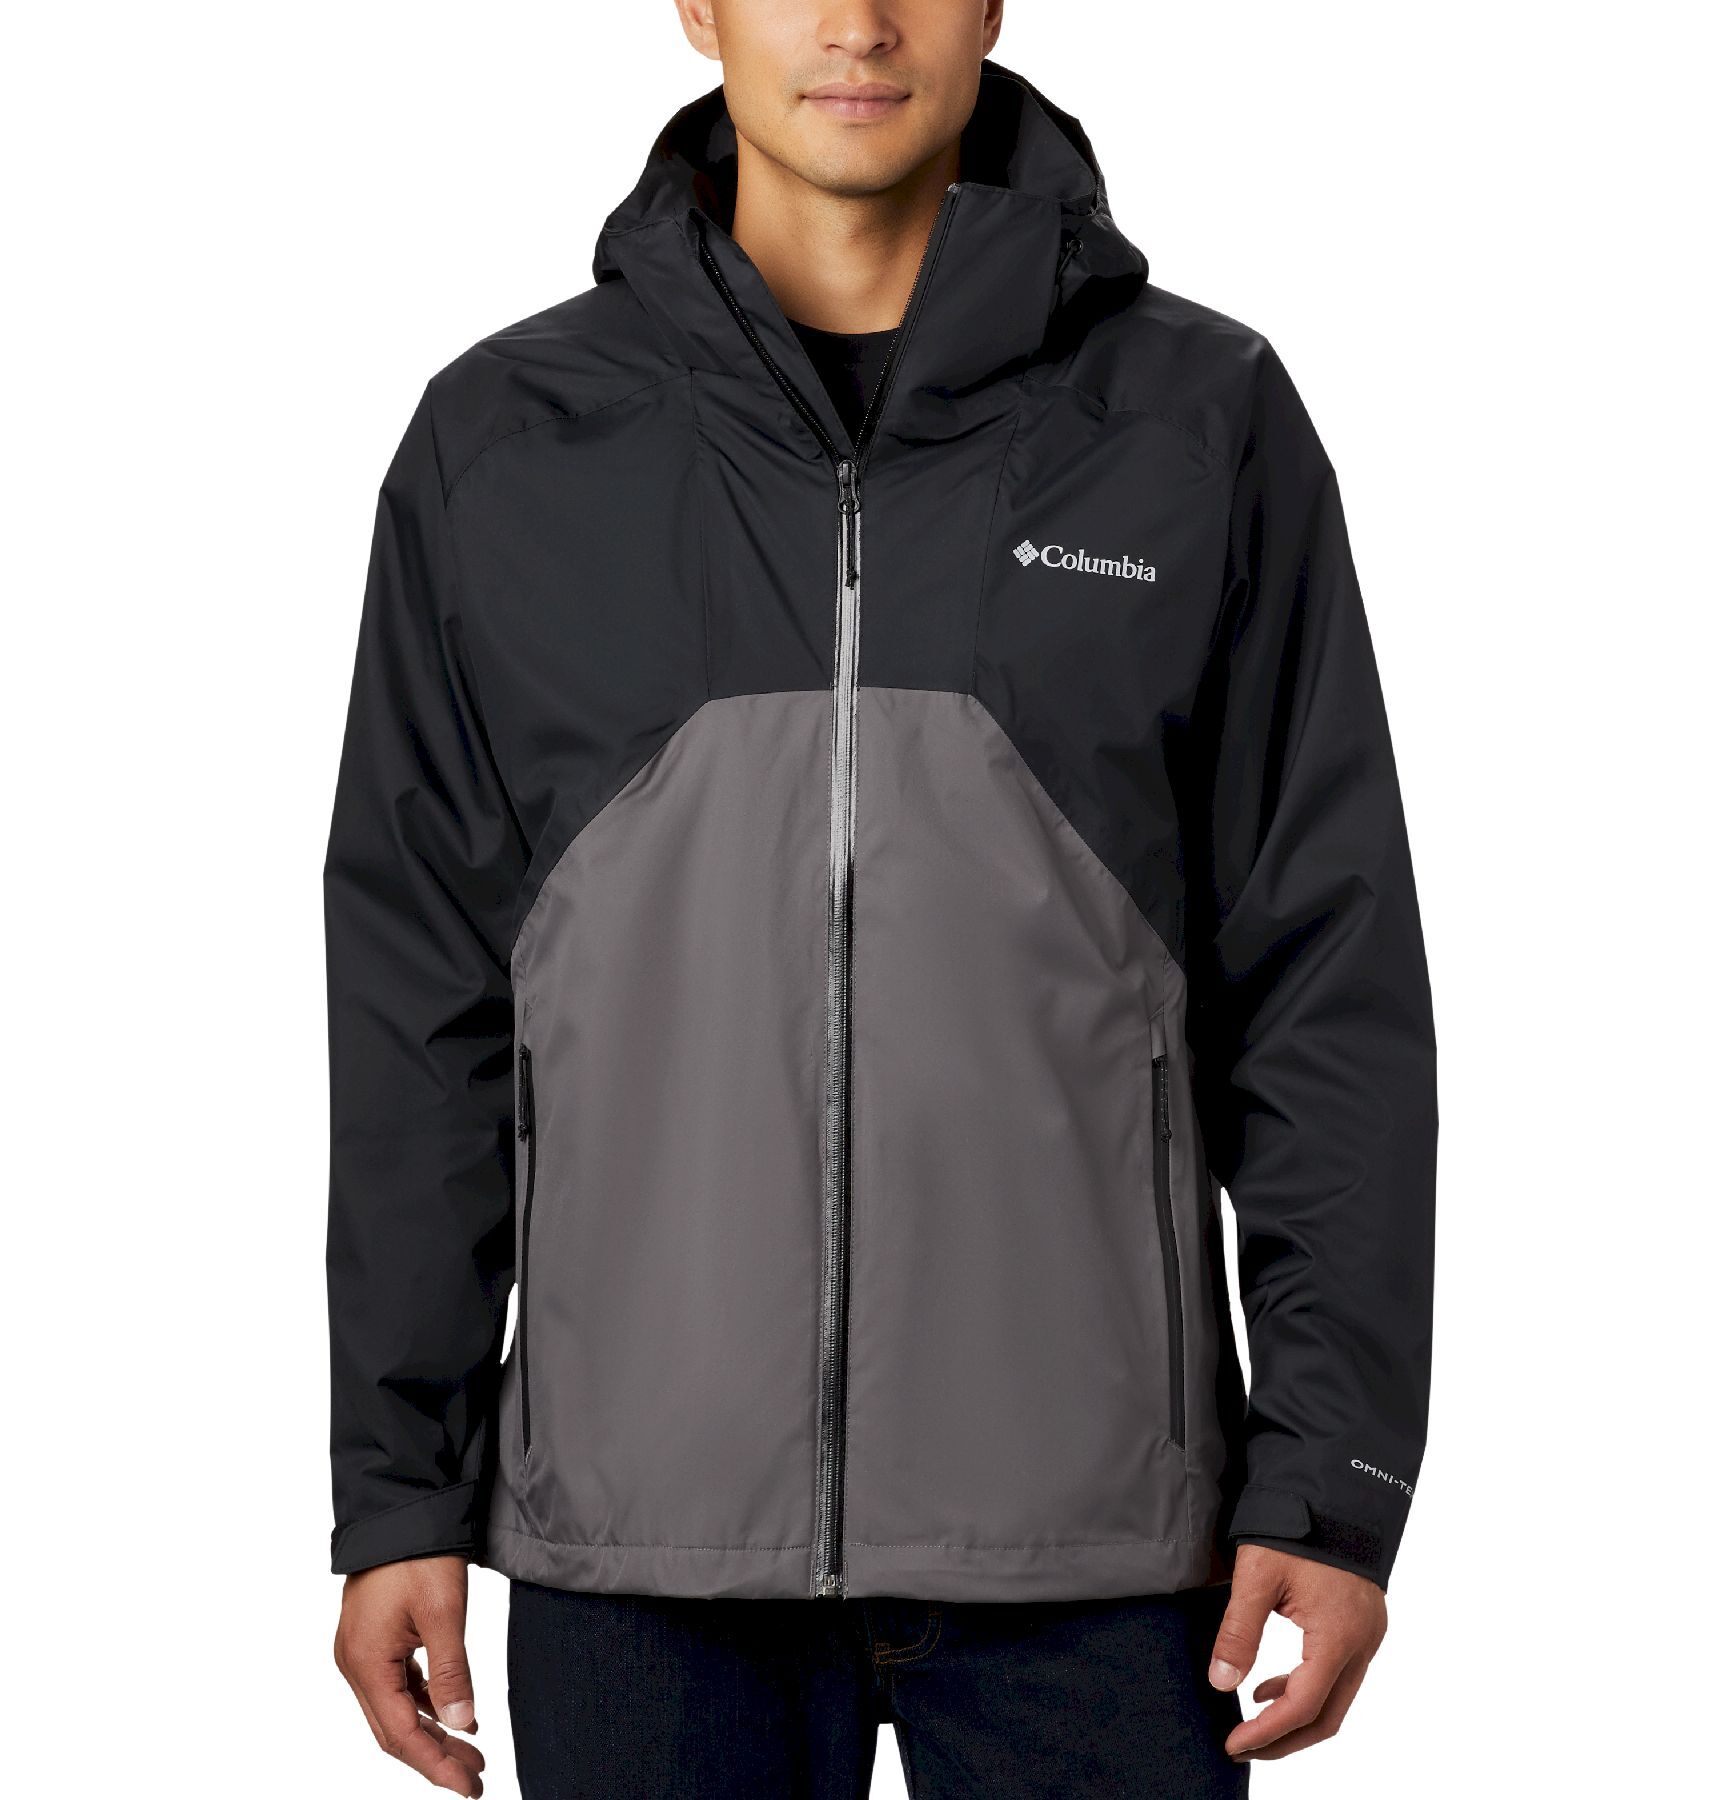 Columbia Rain Scape Jacket - Waterproof jacket - Men's